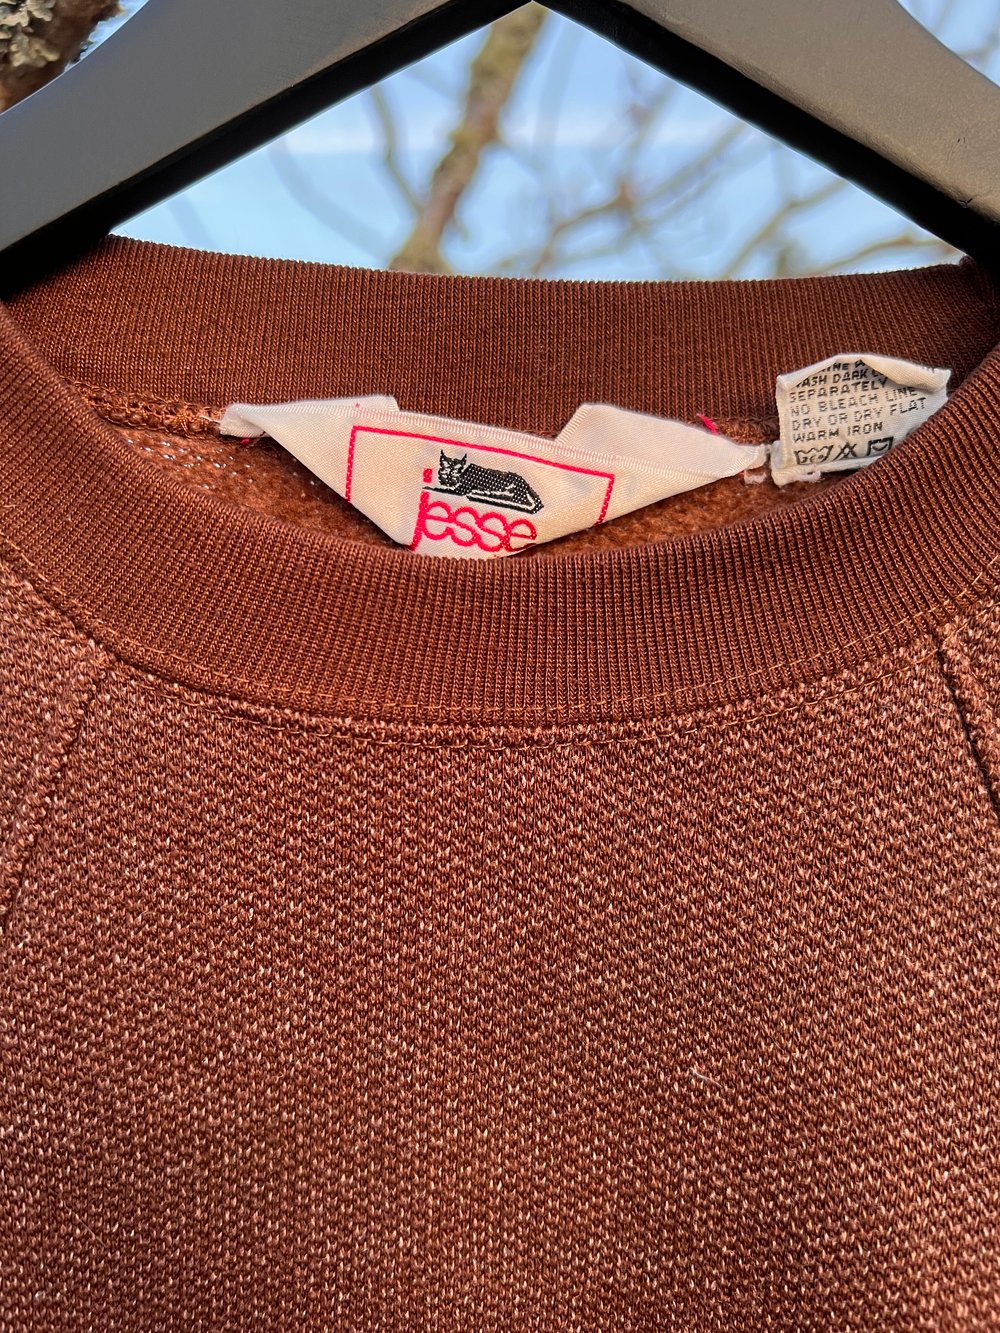 Vintage Jesse Pocket Sweatshirt (S)